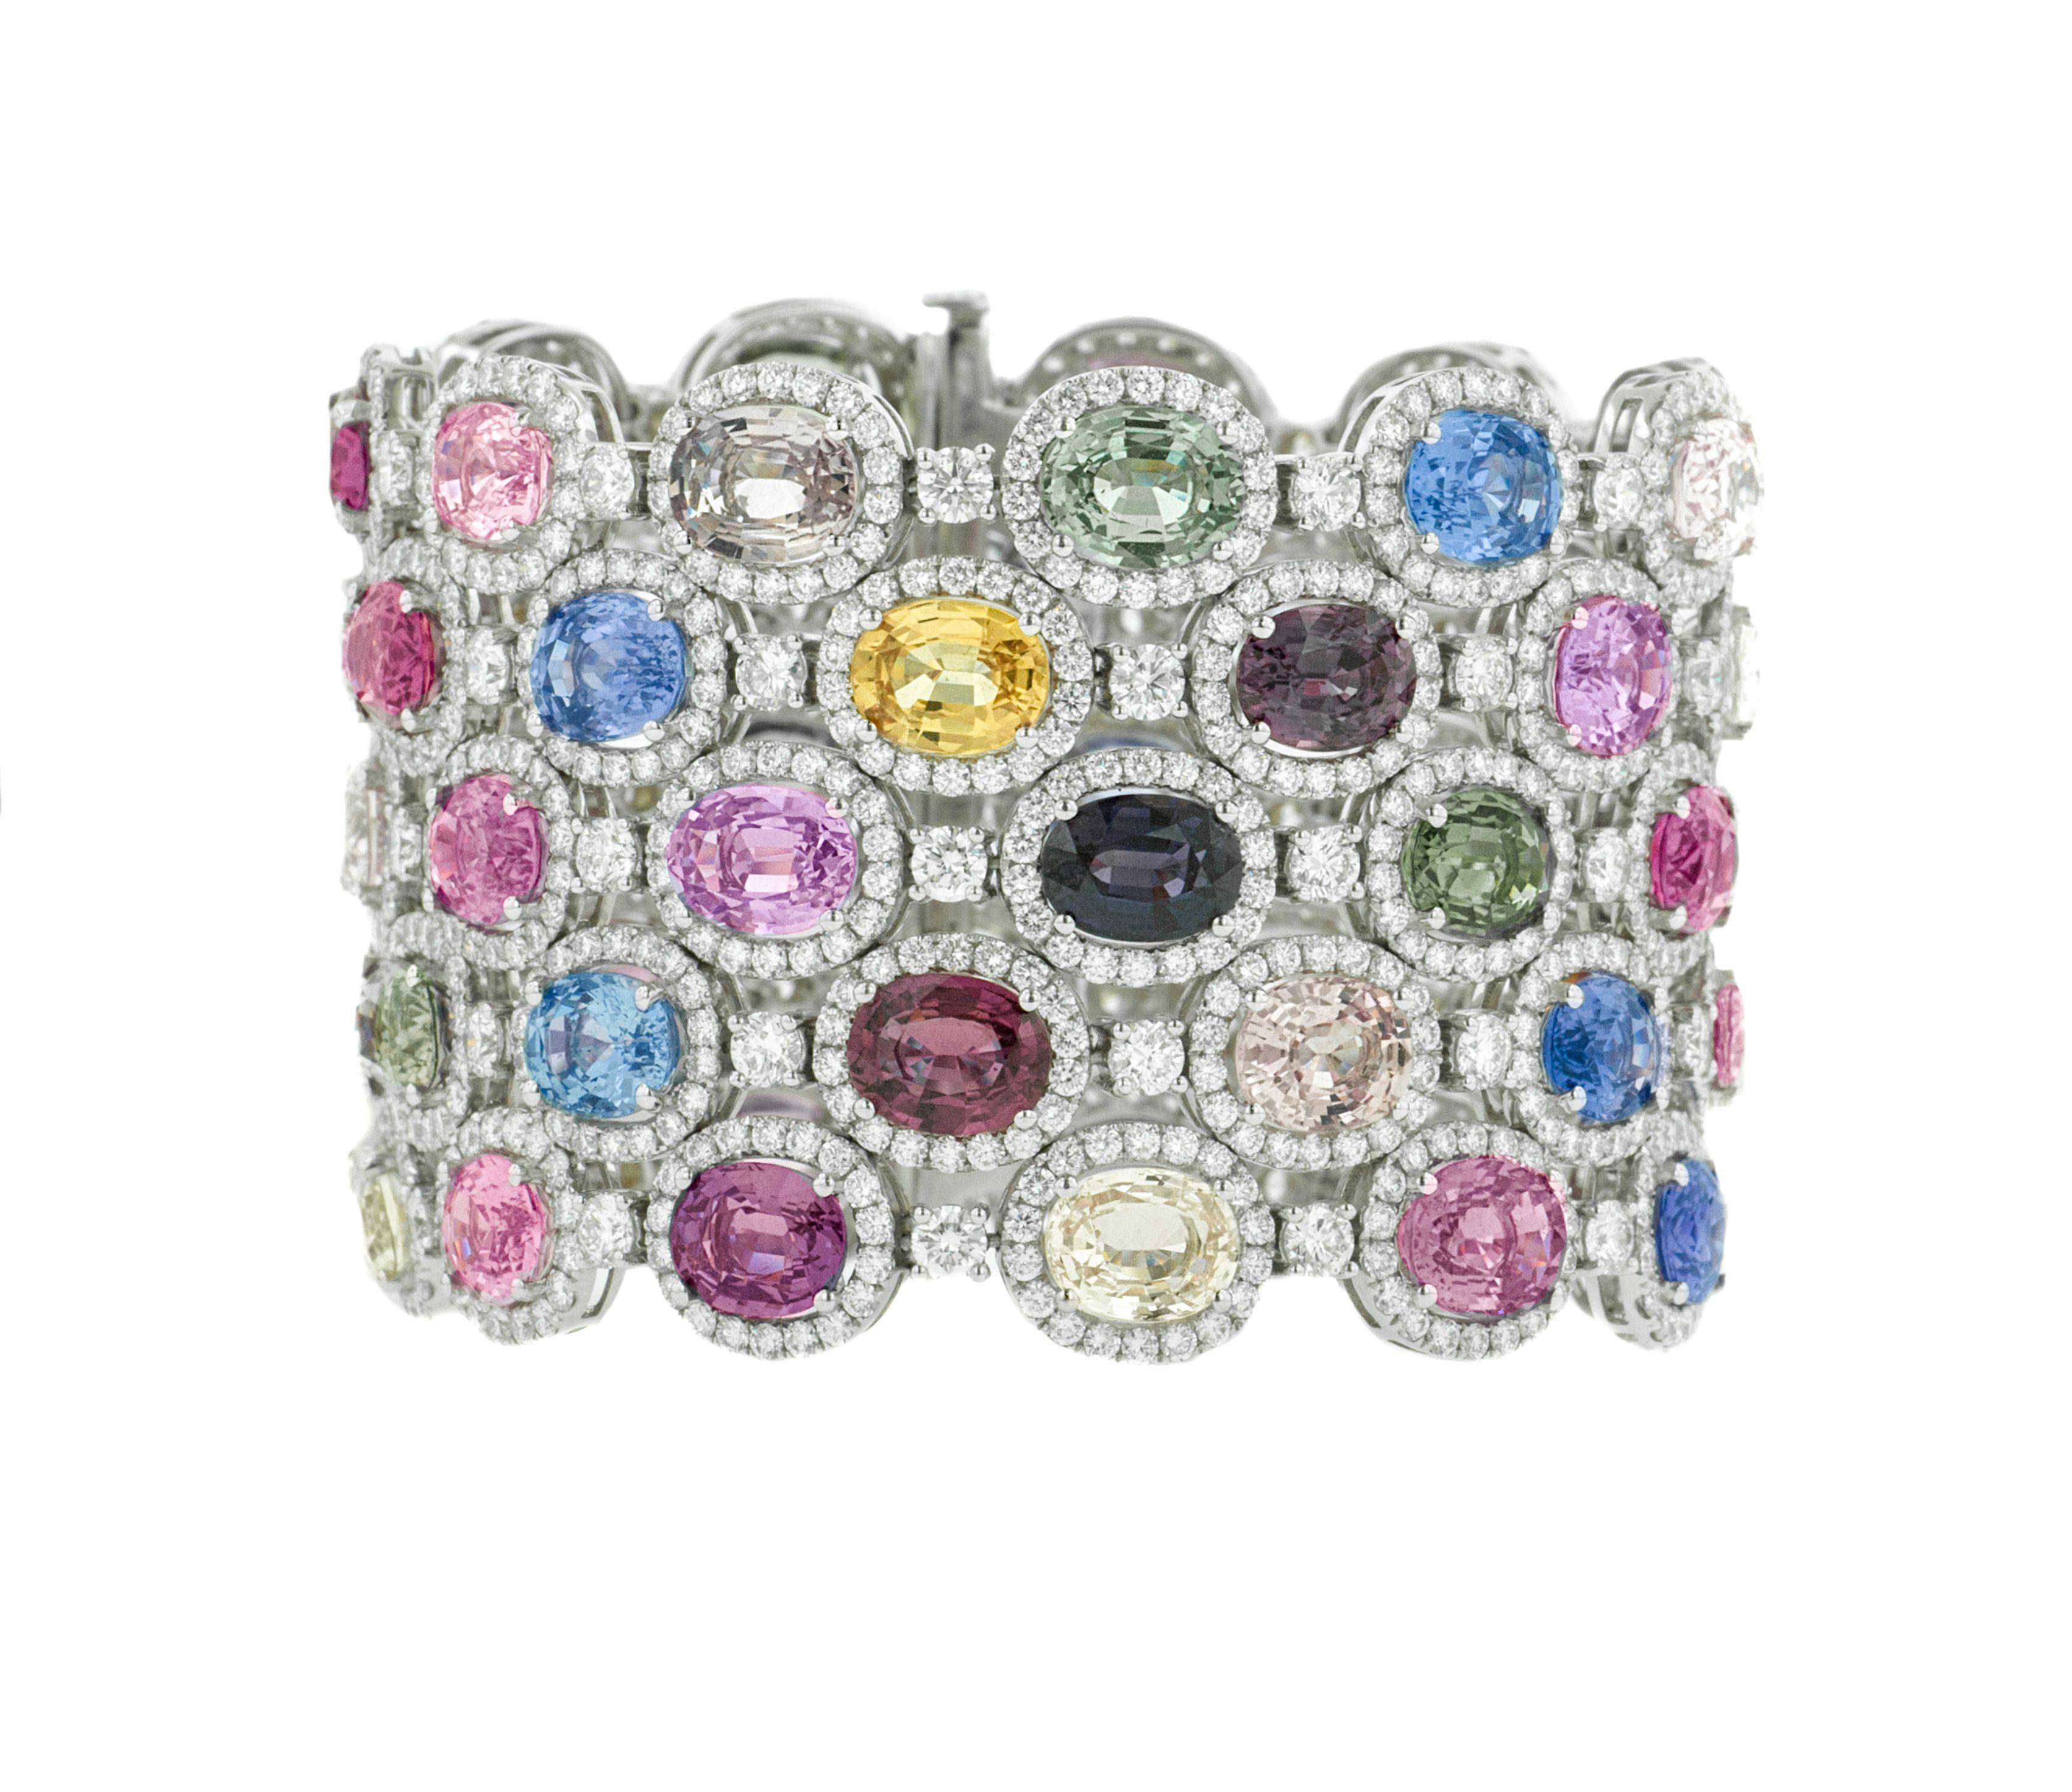  Bracelet en saphir et diamant orné de 121.00 cts tw de saphirs ovales multicolores non chauffés entourés de 28.50 cts tw de diamants disposés en hexagone dans un bracelet en or blanc 18 carats (pureté VS).